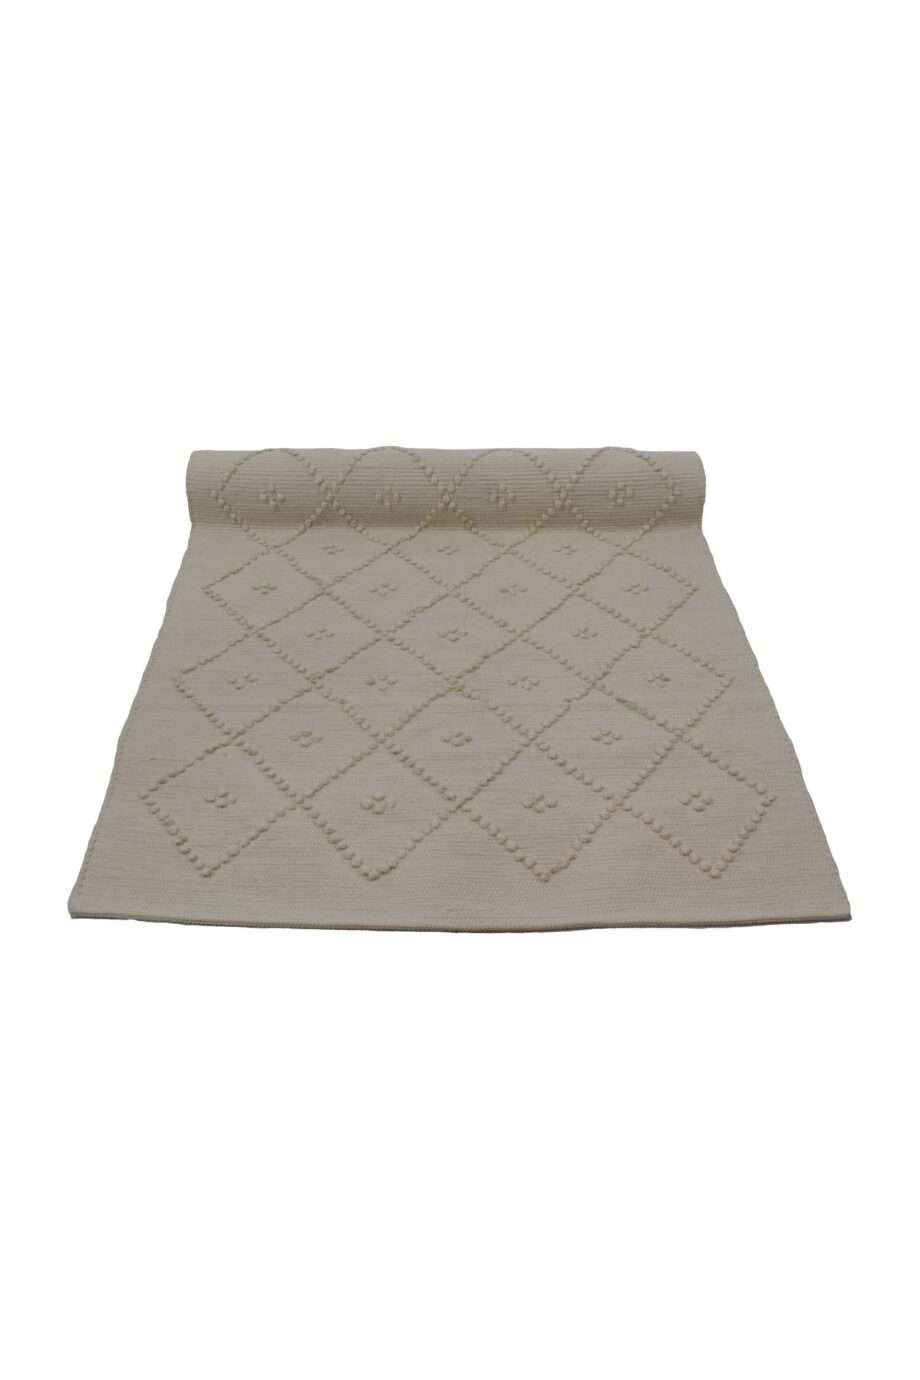 diamond linen woven cotton floor mat small